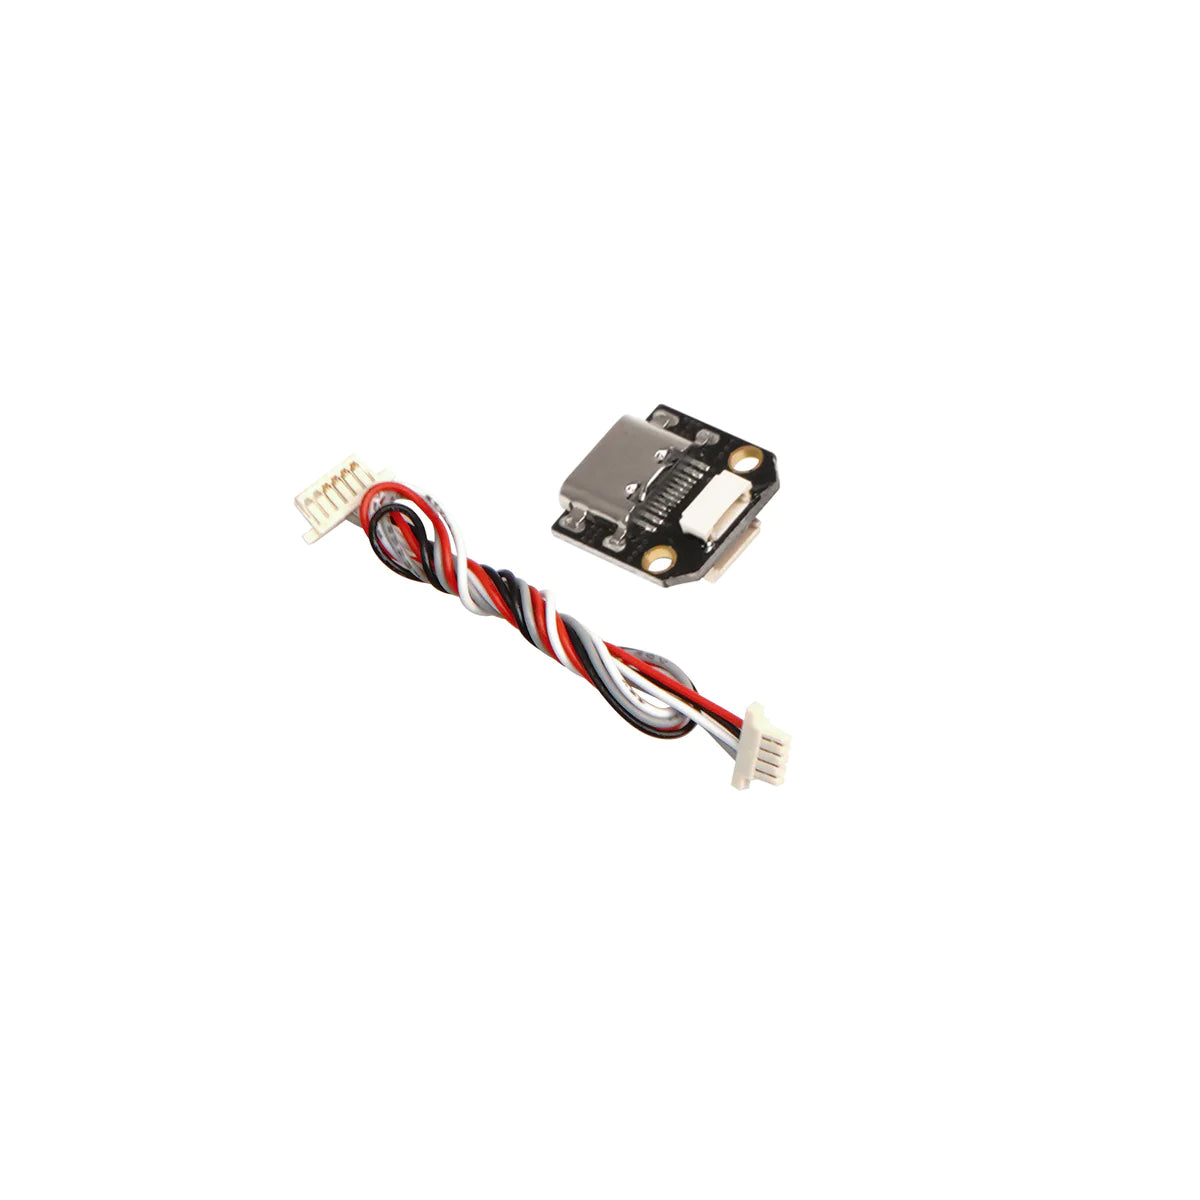 Walksnail Kit Type C USB Cable WNPJ-00017